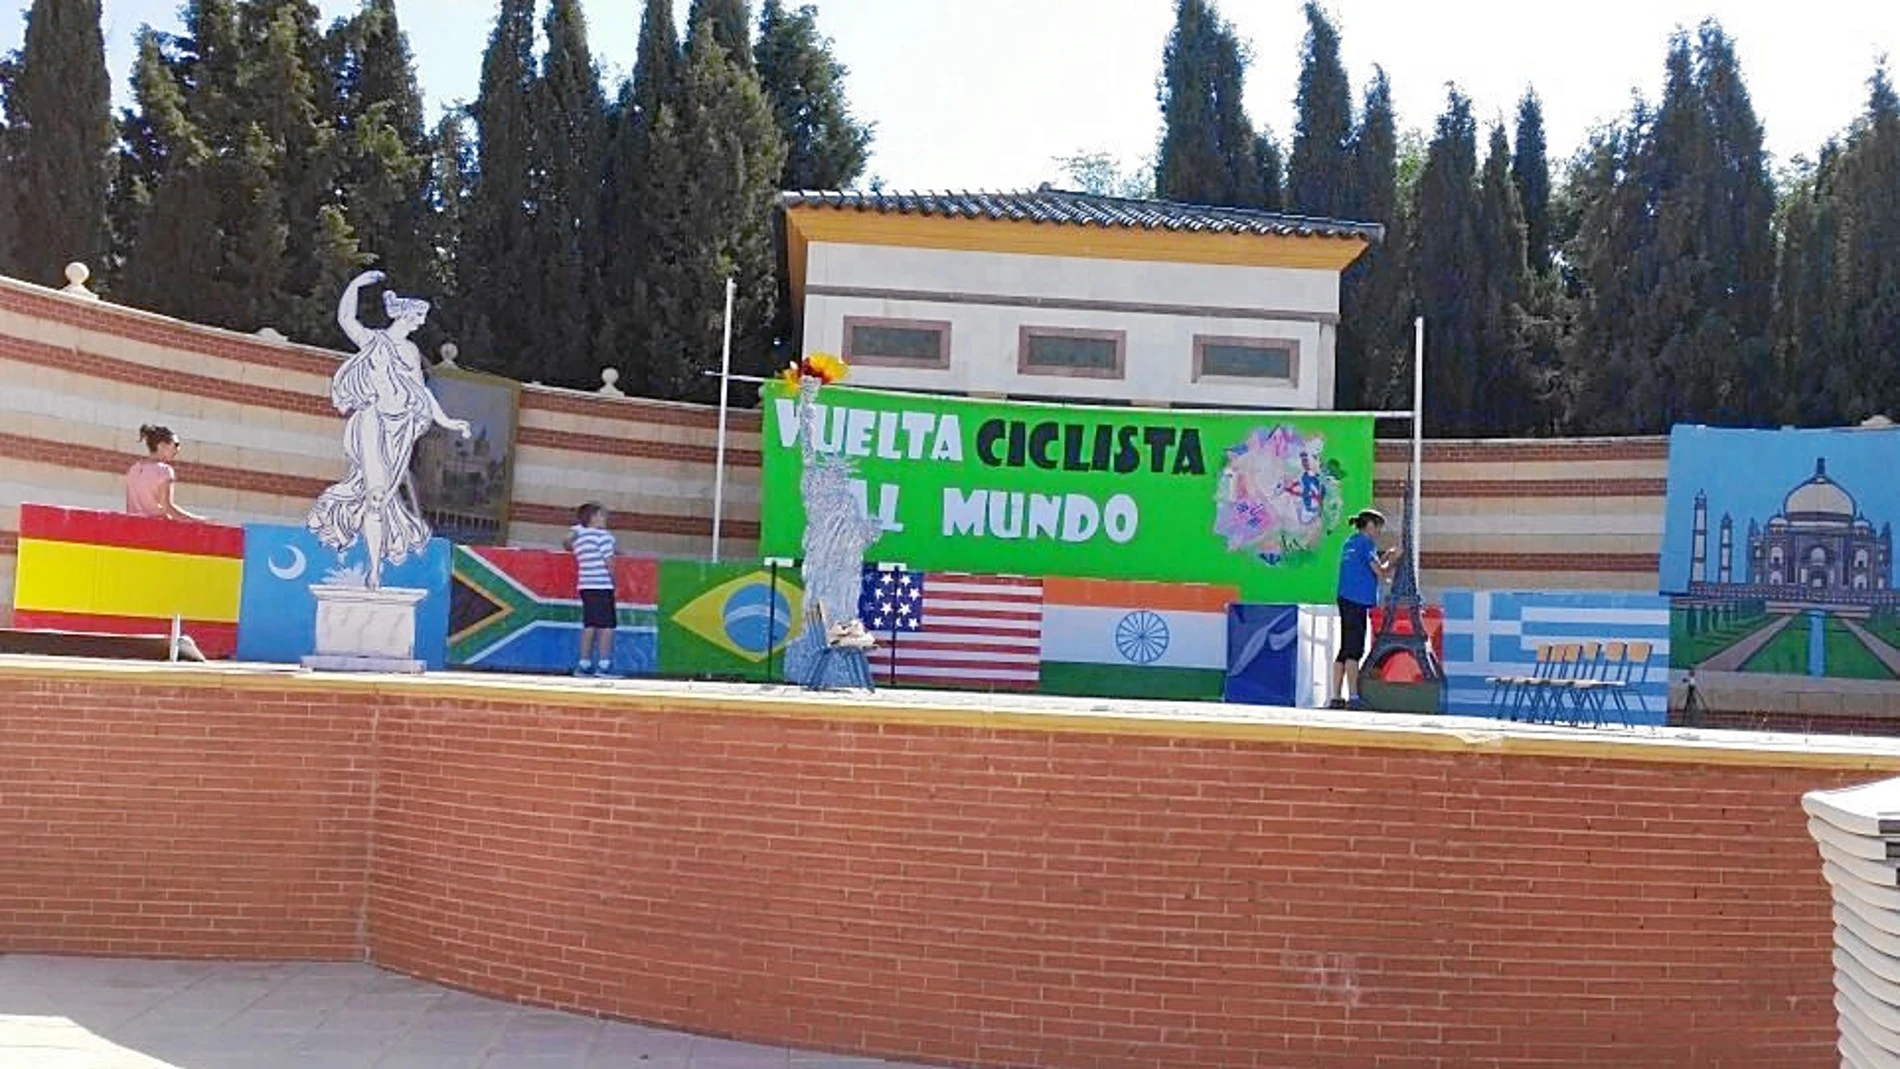 Vista de la escenografía preparada para el acto escolar que incluía la bandera de España y de otros países